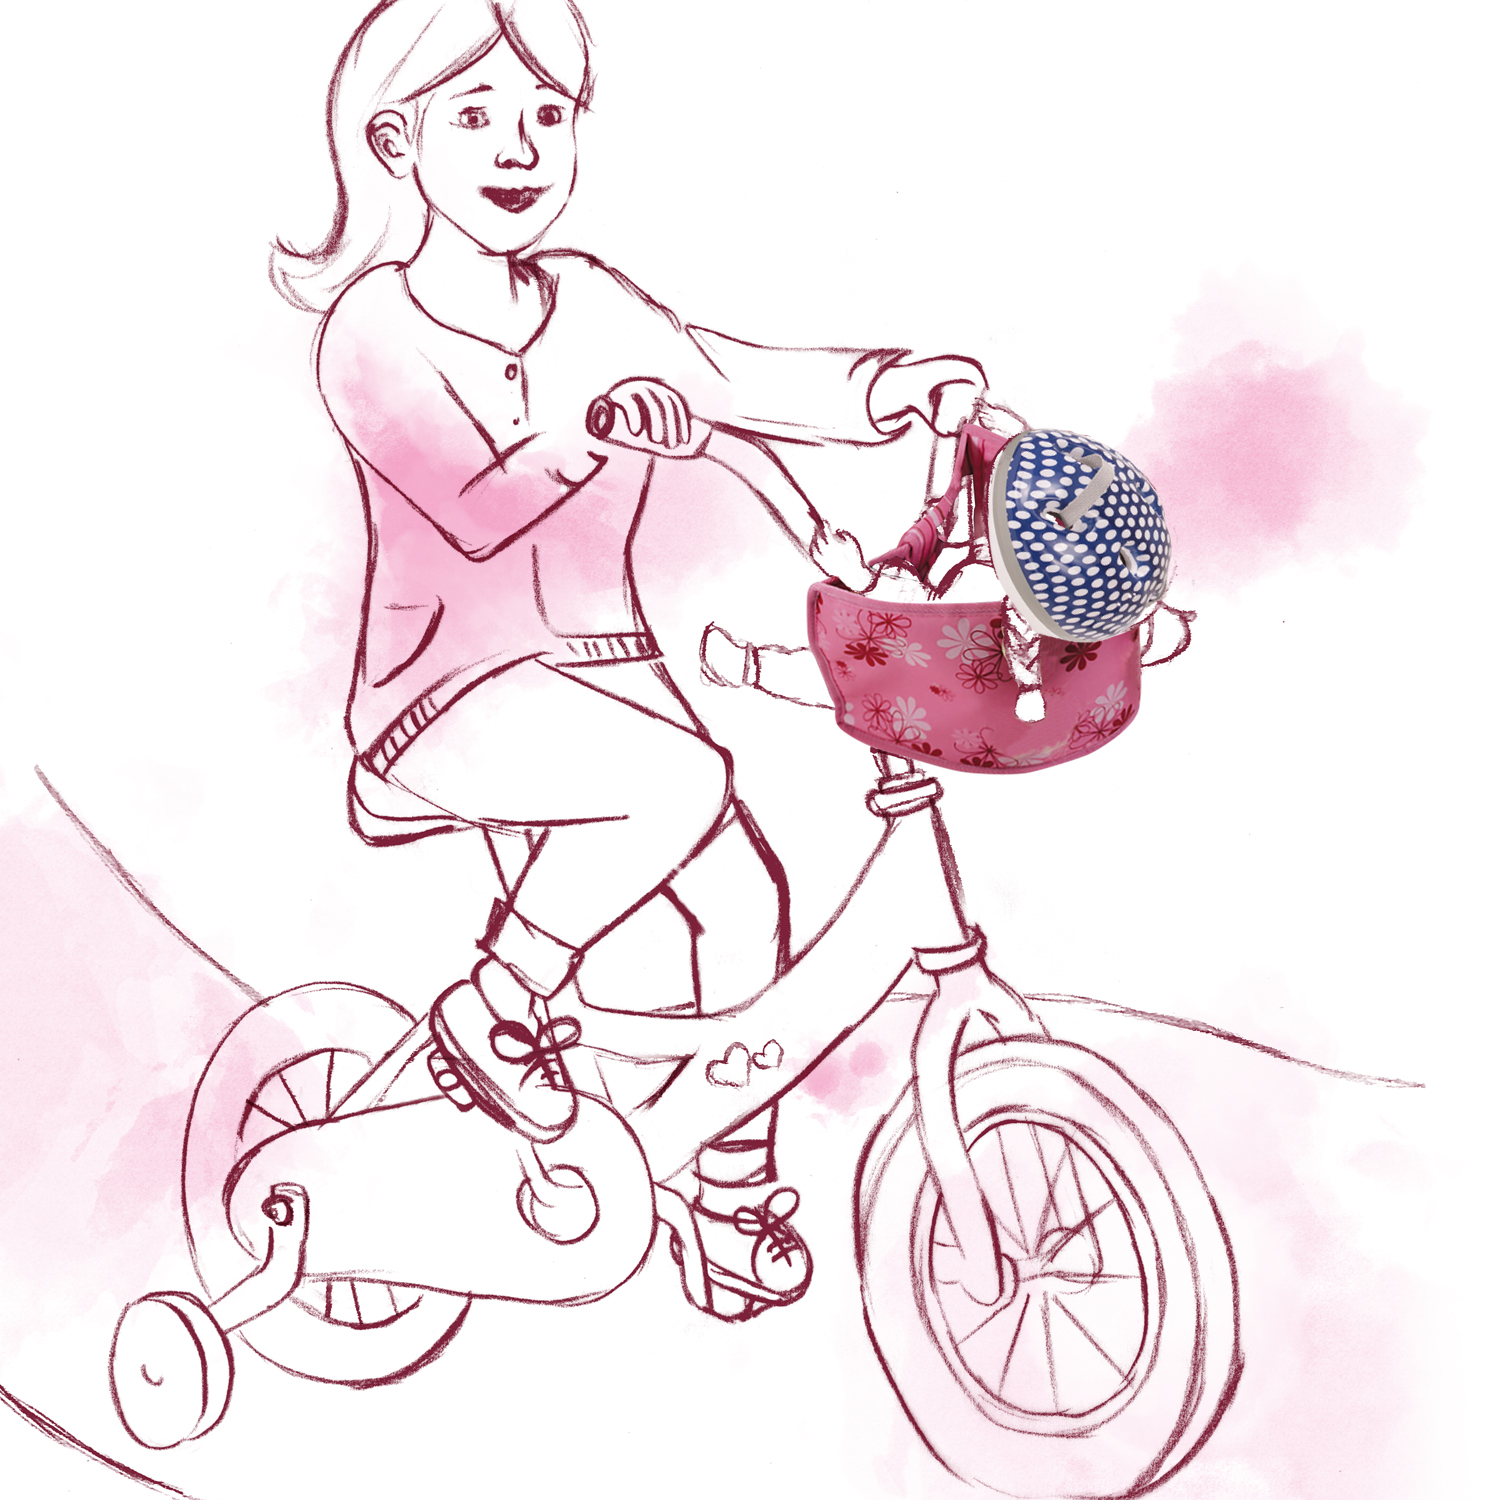 fahrradhelm-rollerhelm-zubehoer-goetz-zeichnung-reithelm-getupft-blau